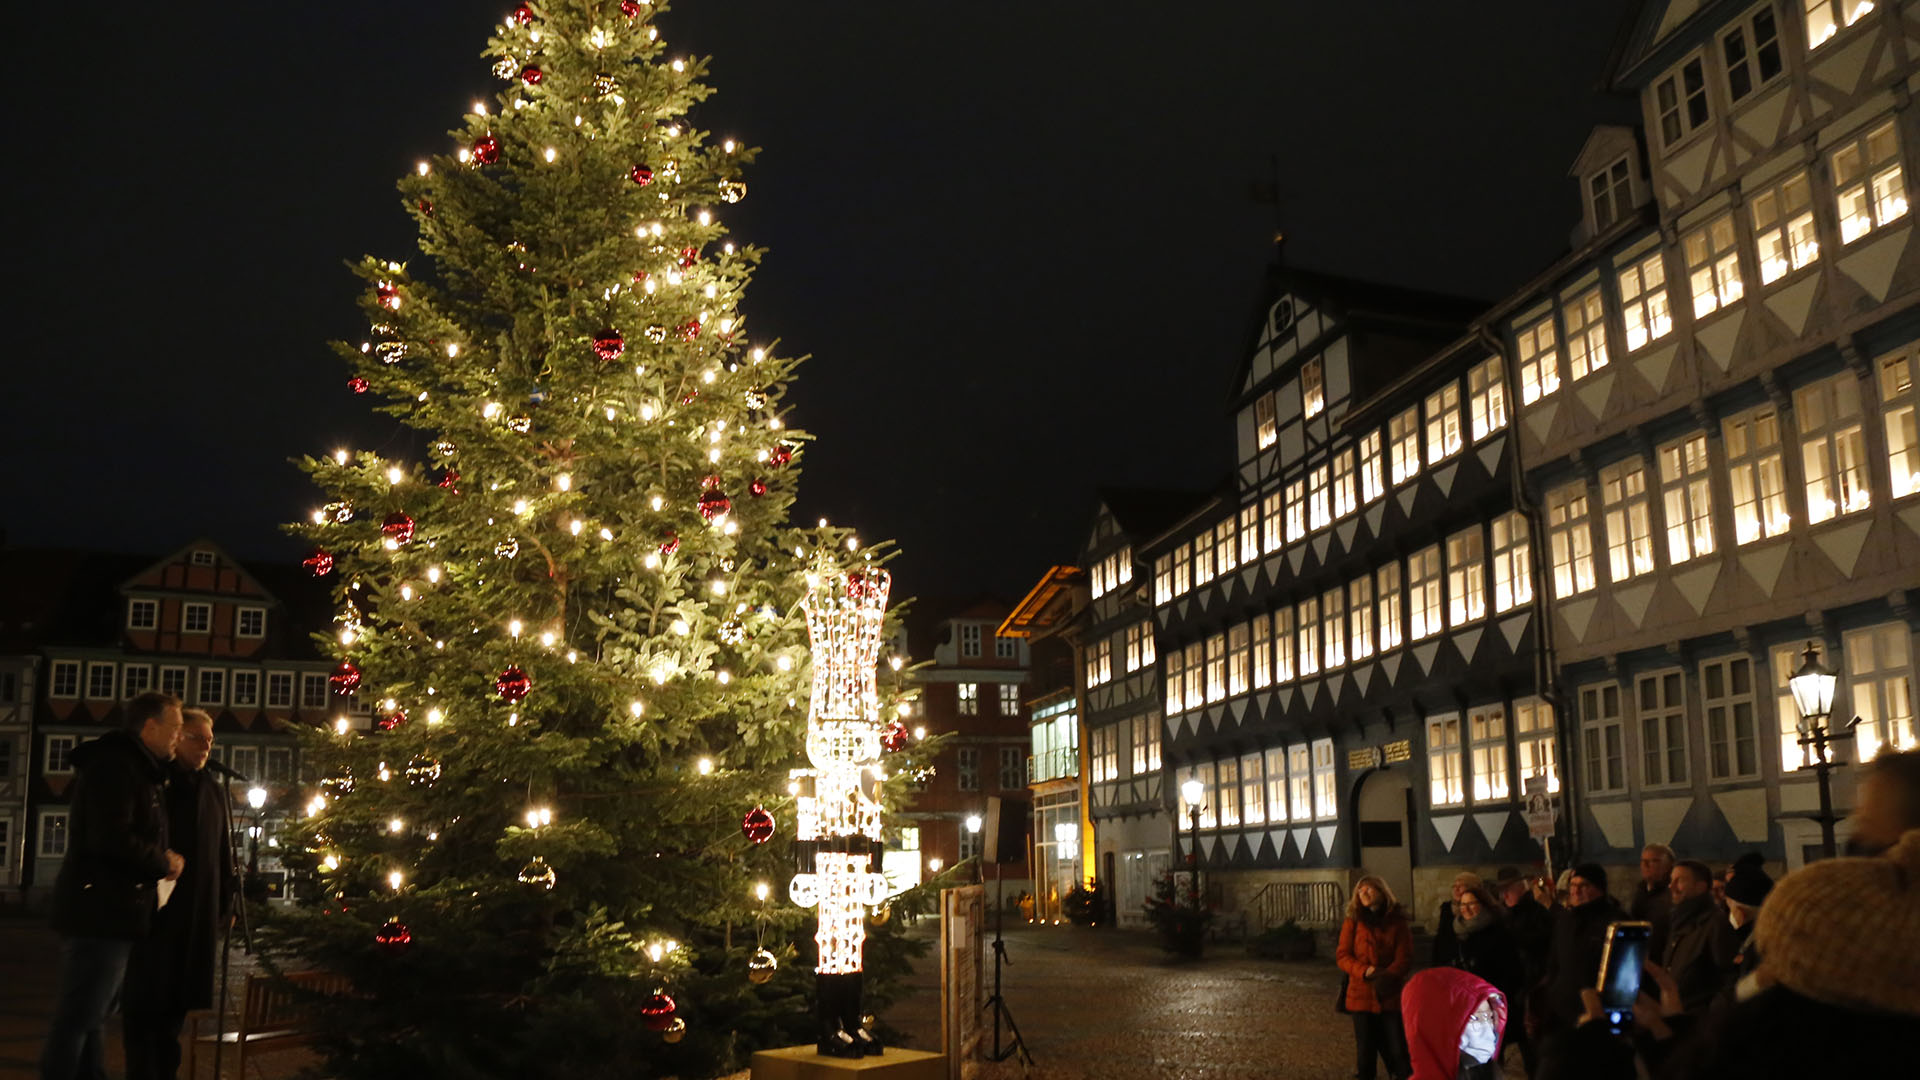 Eine große Tanne mit vielen leuchteten Lichtern steht vor dem Wolfenbütteler Rathaus. In jedem Fenster stehen leuchtende Lichterbögen. Neben der Tanne stehen zwei Männer, davor einige Menschen.